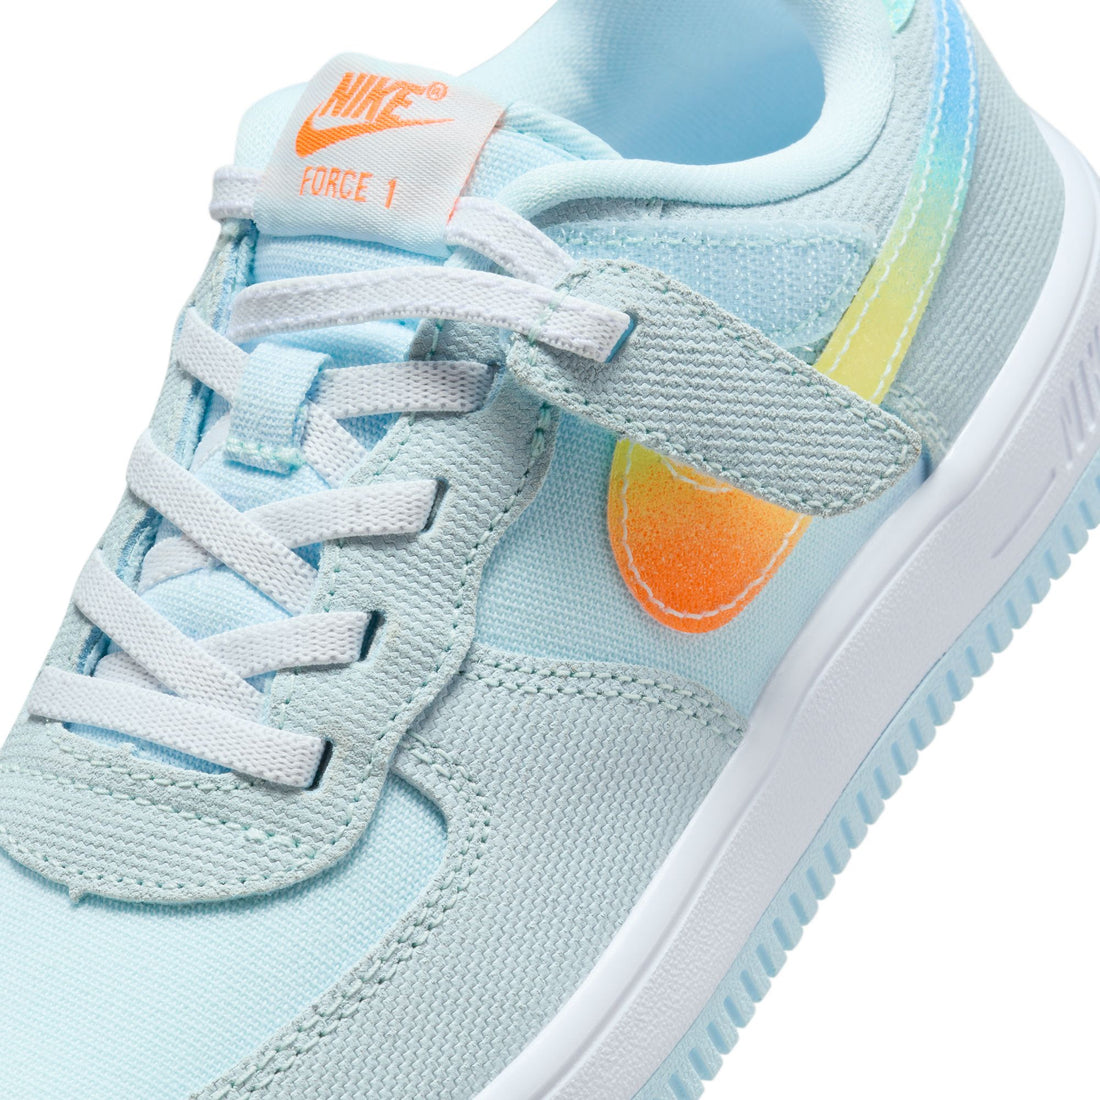 Nike Force 1 Low Easyon BP (Glacier Blue/Total Orange)